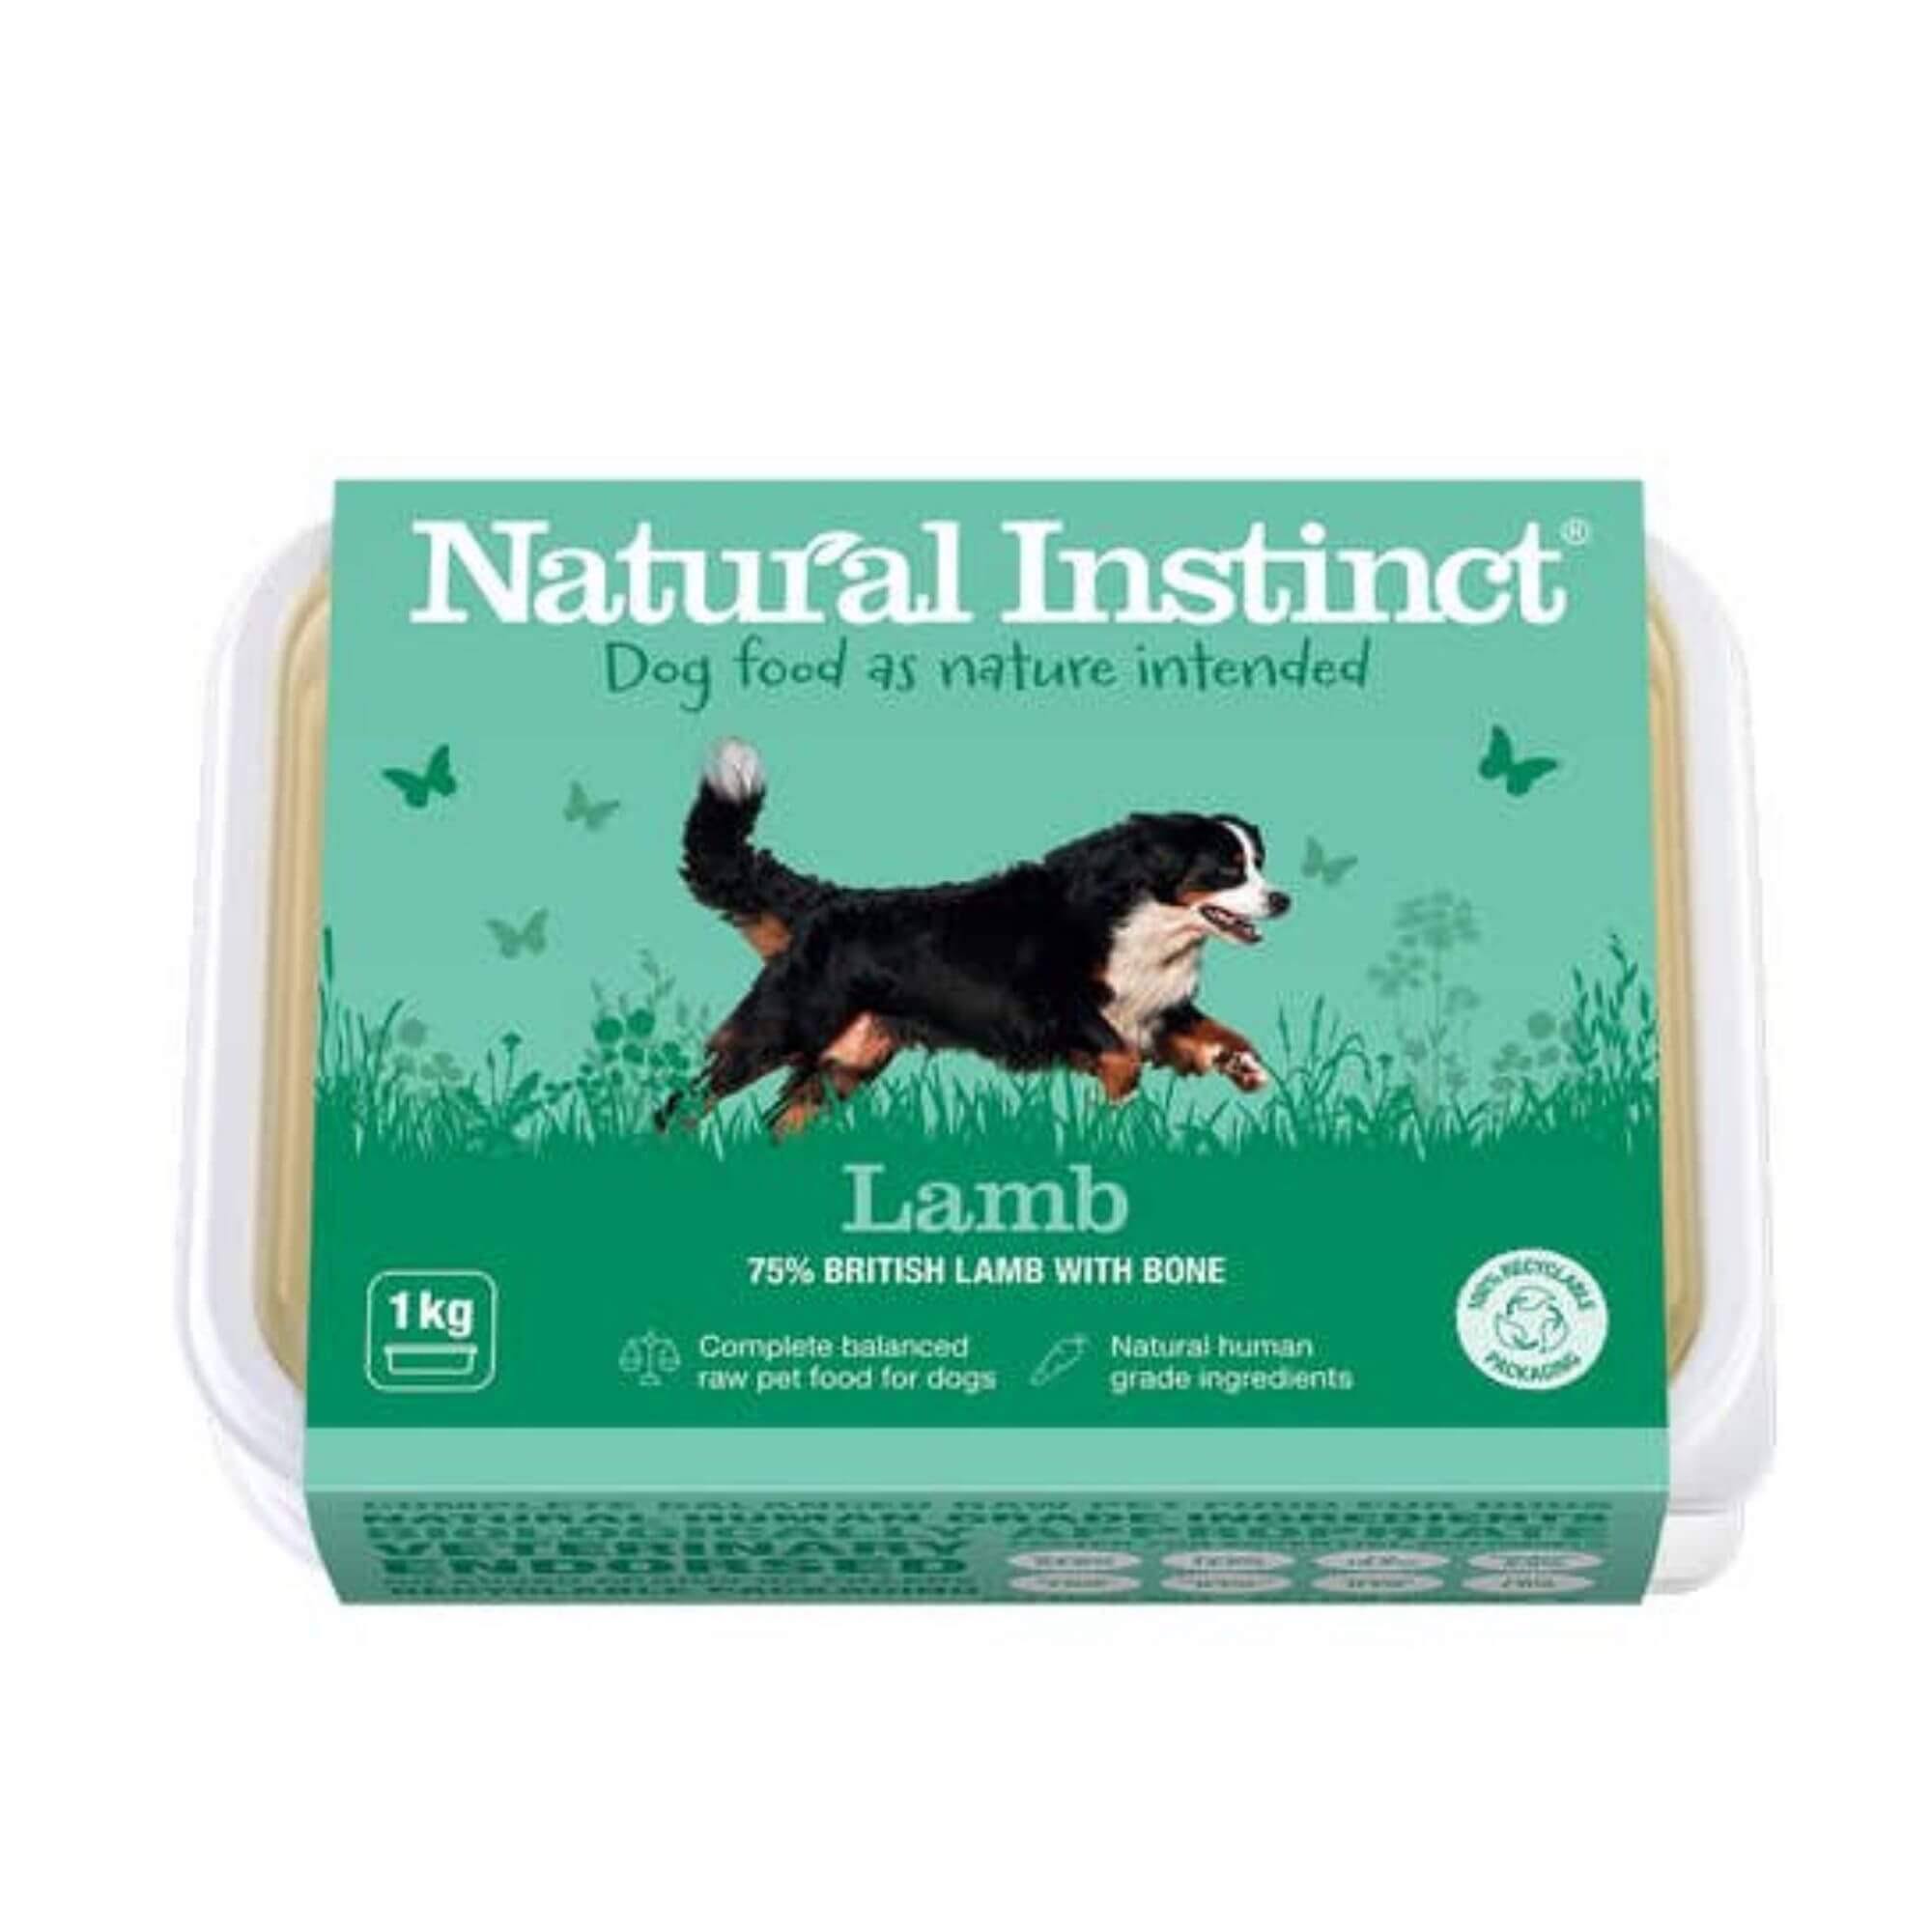 Natural Instinct 1kg Natural Lamb